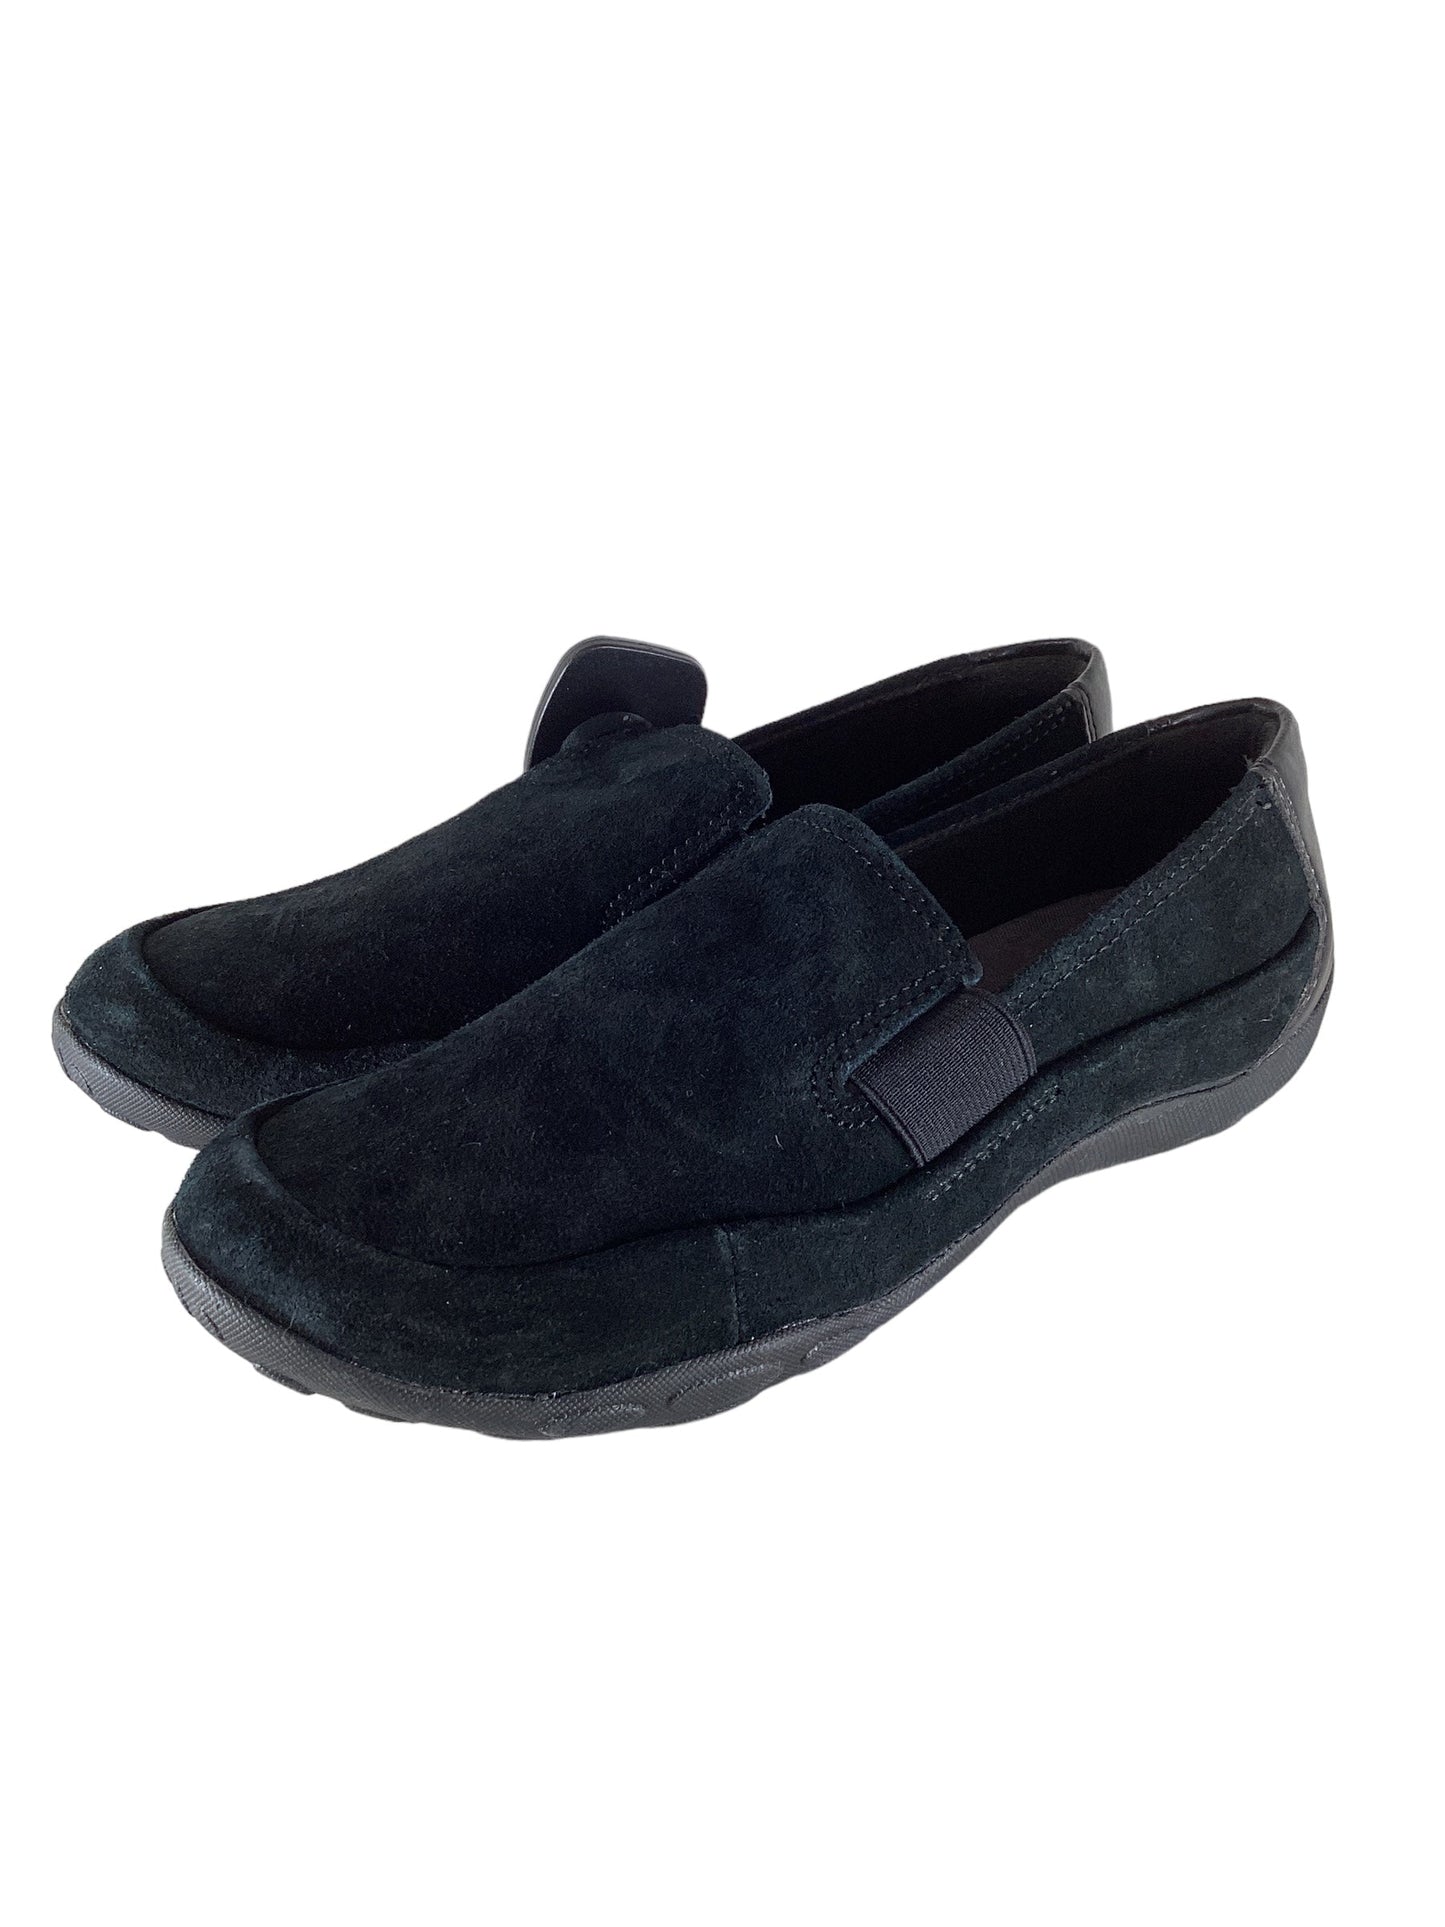 Black Shoes Flats Clarks, Size 7